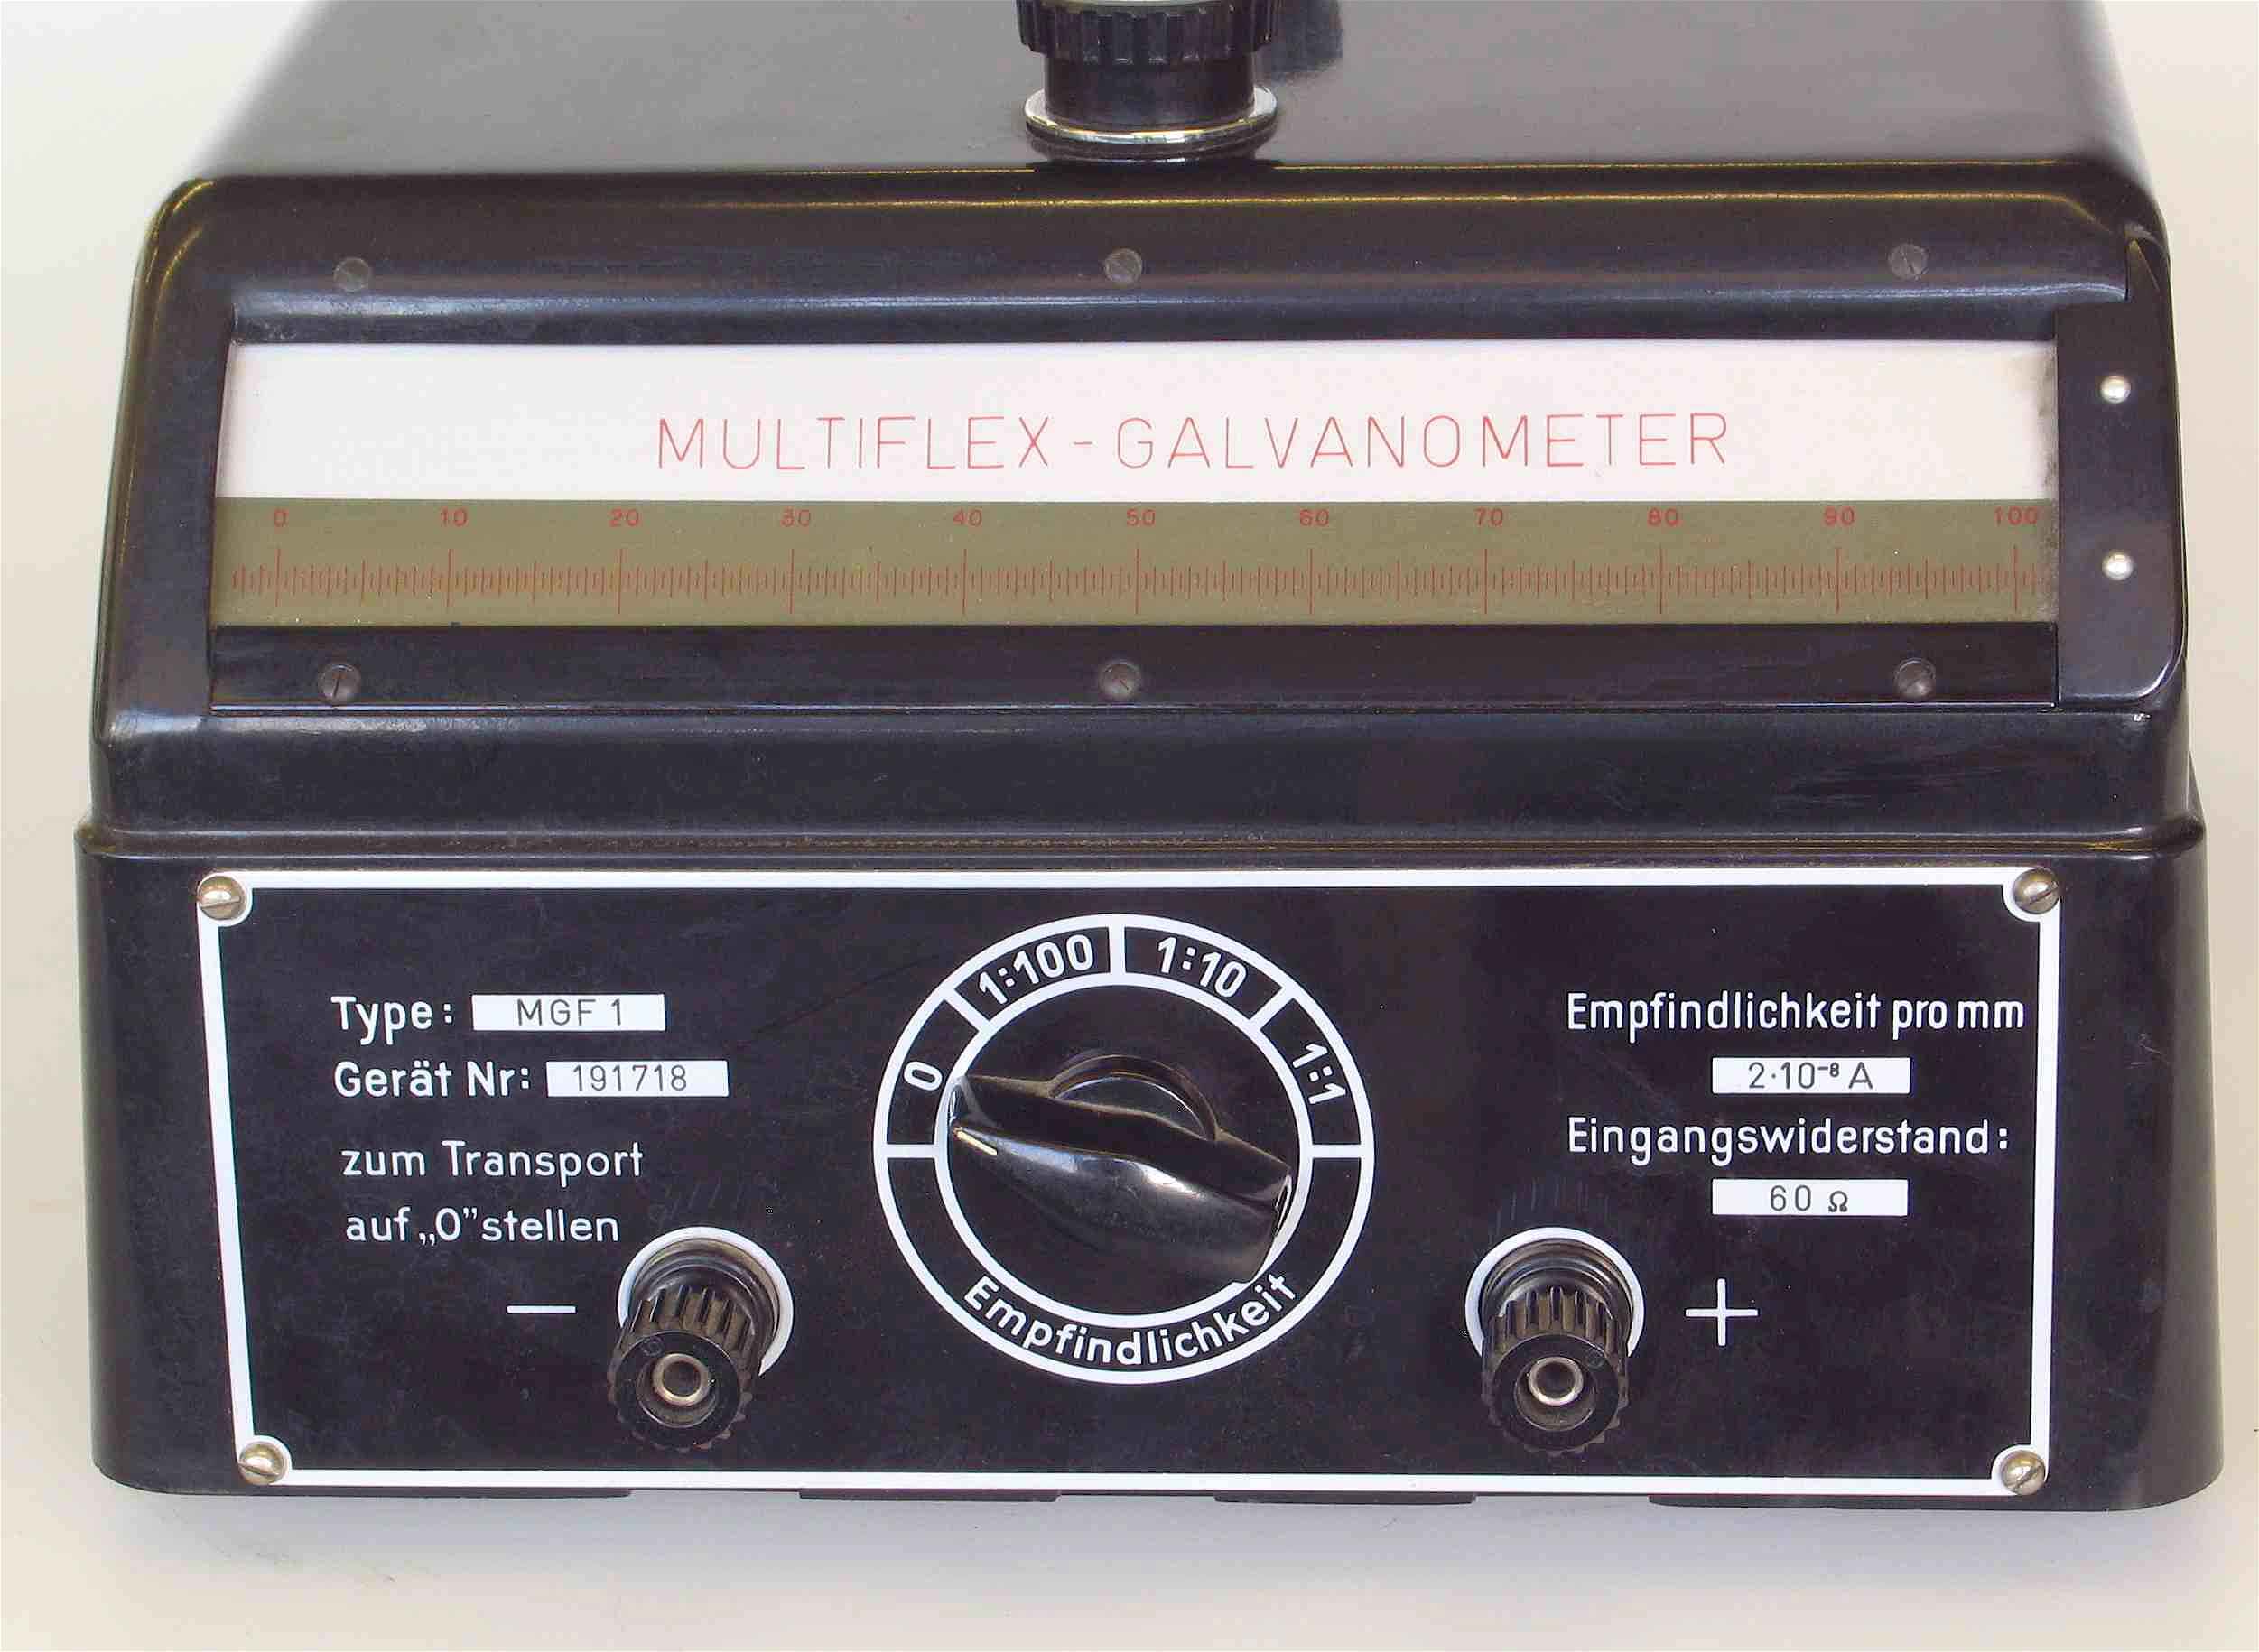 Galvanomètres de table à projection
(“Multiflex”)